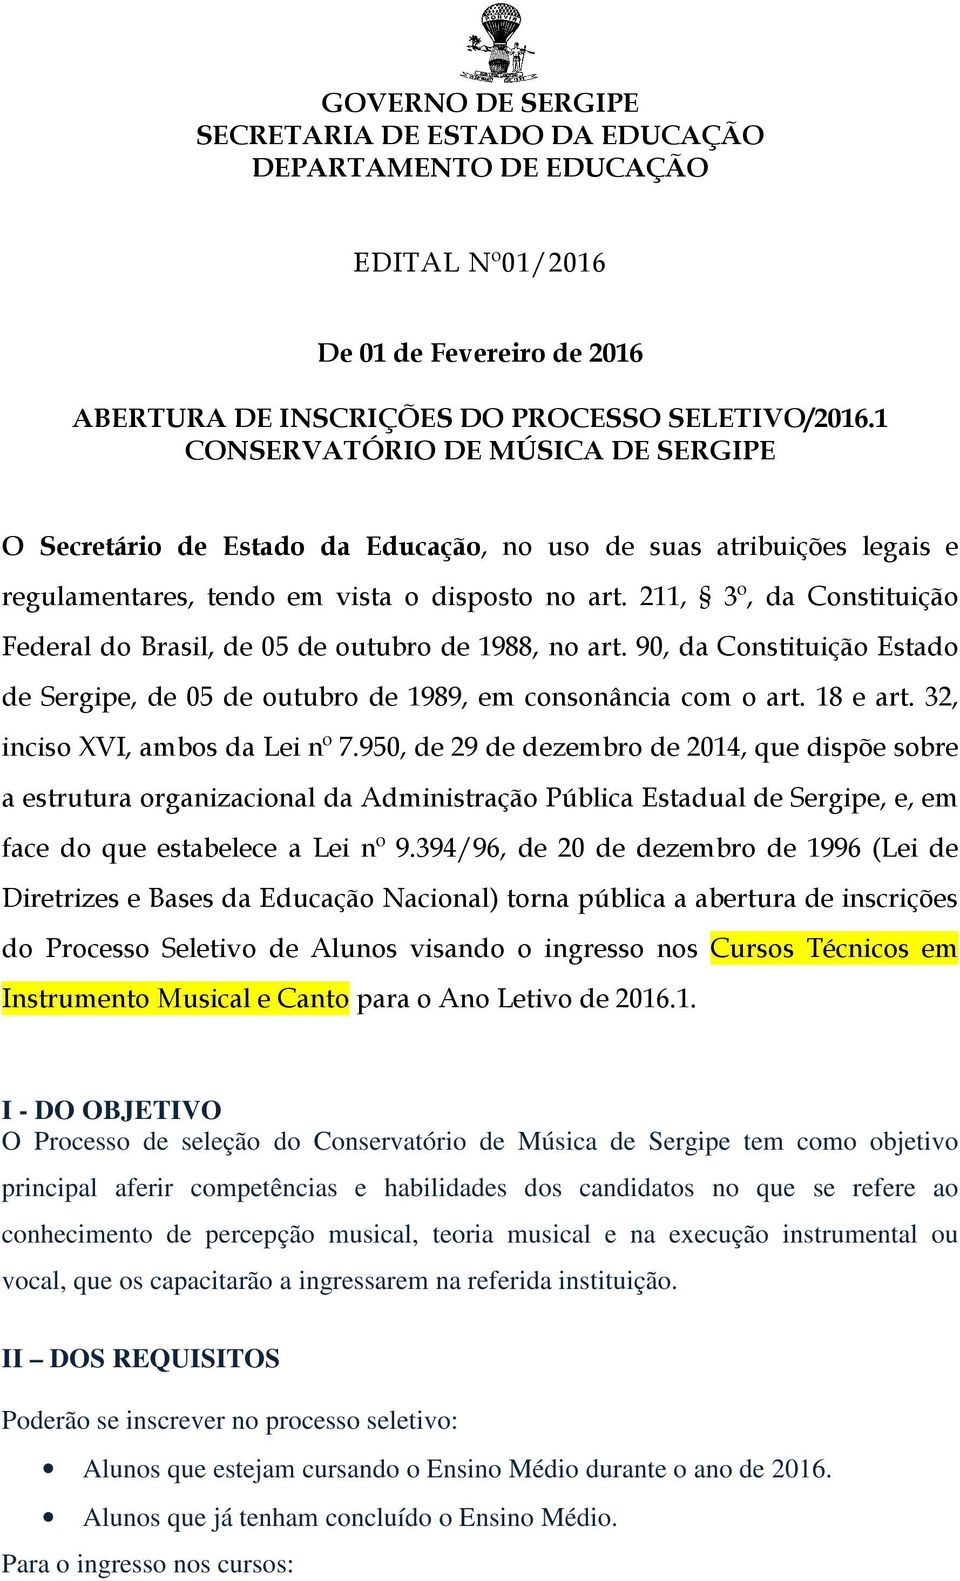 211, 3º, da Constituição Federal do Brasil, de 05 de outubro de 1988, no art. 90, da Constituição Estado de Sergipe, de 05 de outubro de 1989, em consonância com o art. 18 e art.